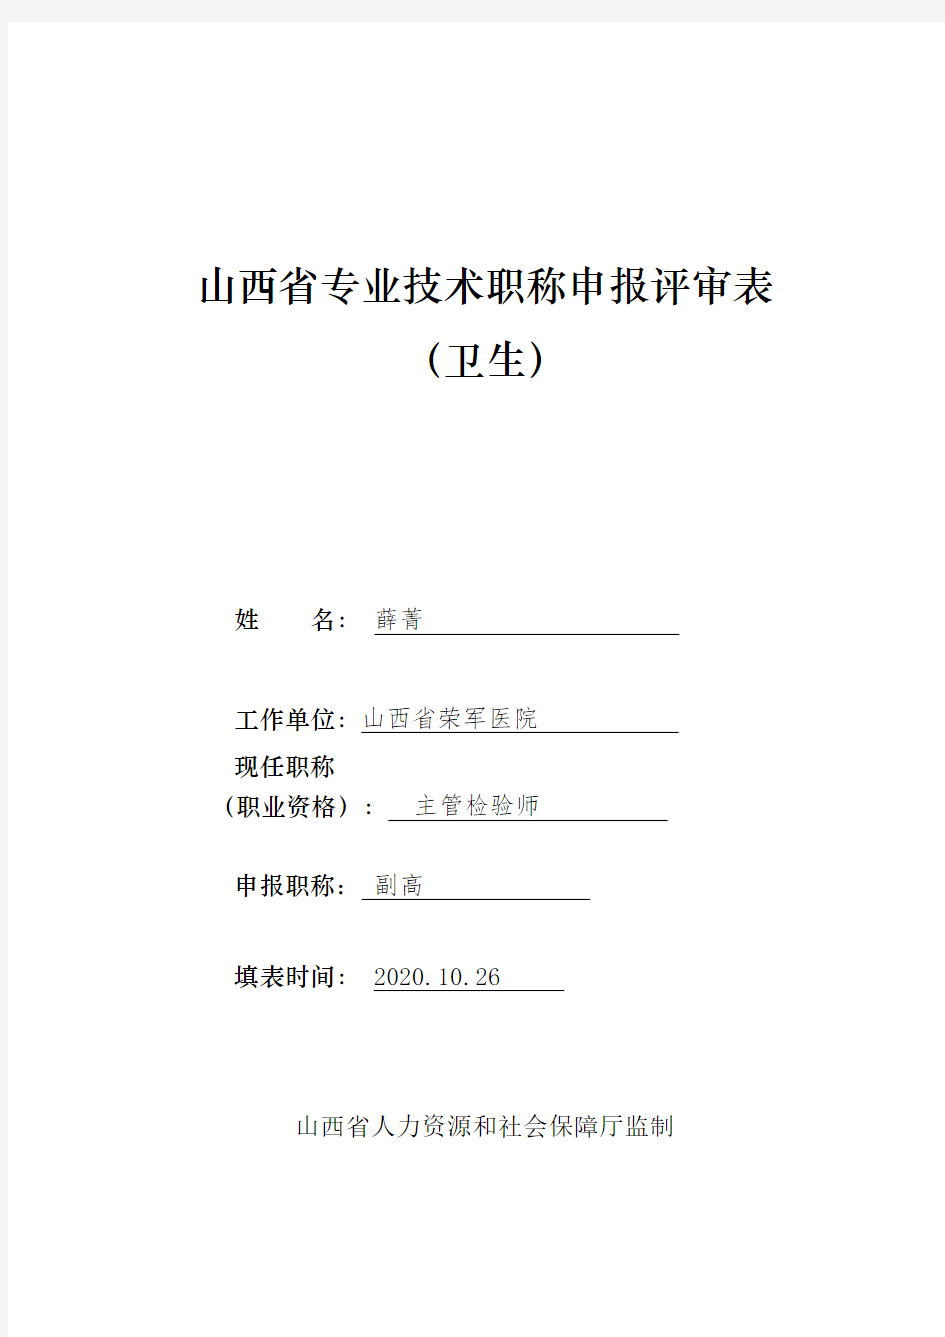 山西省专业技术职称申报评审表  卫生(2019版)